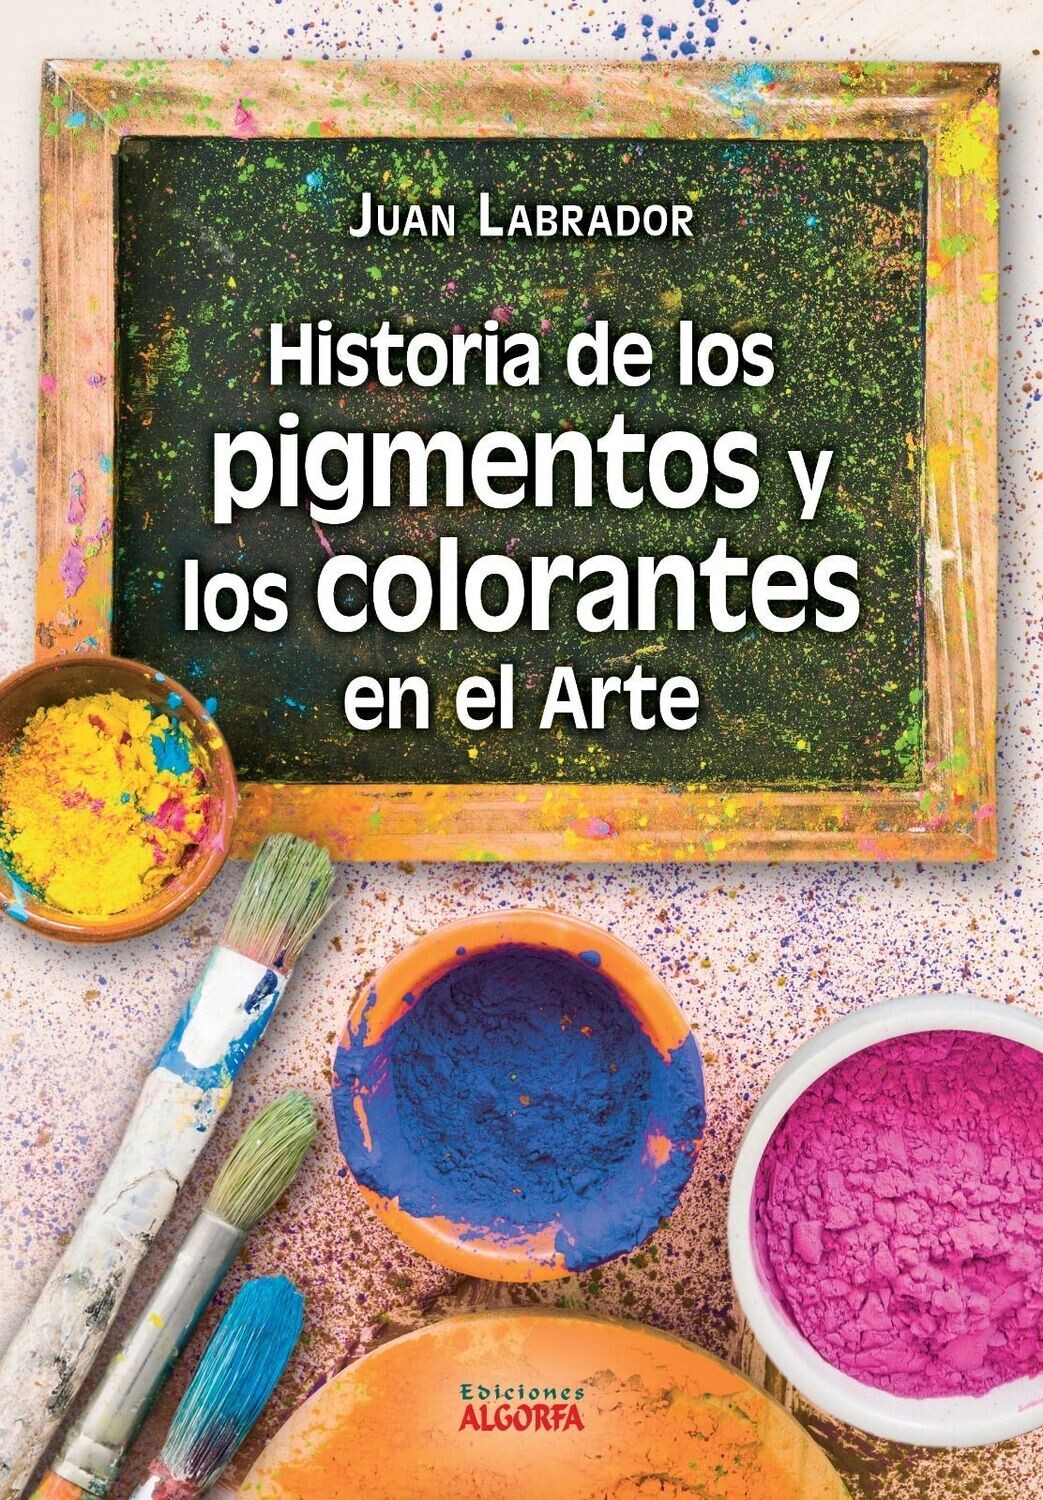 HISTORIA DE LOS PIGMENTOS Y LOS COLORANTES EN EL ARTE. Juan Labrador